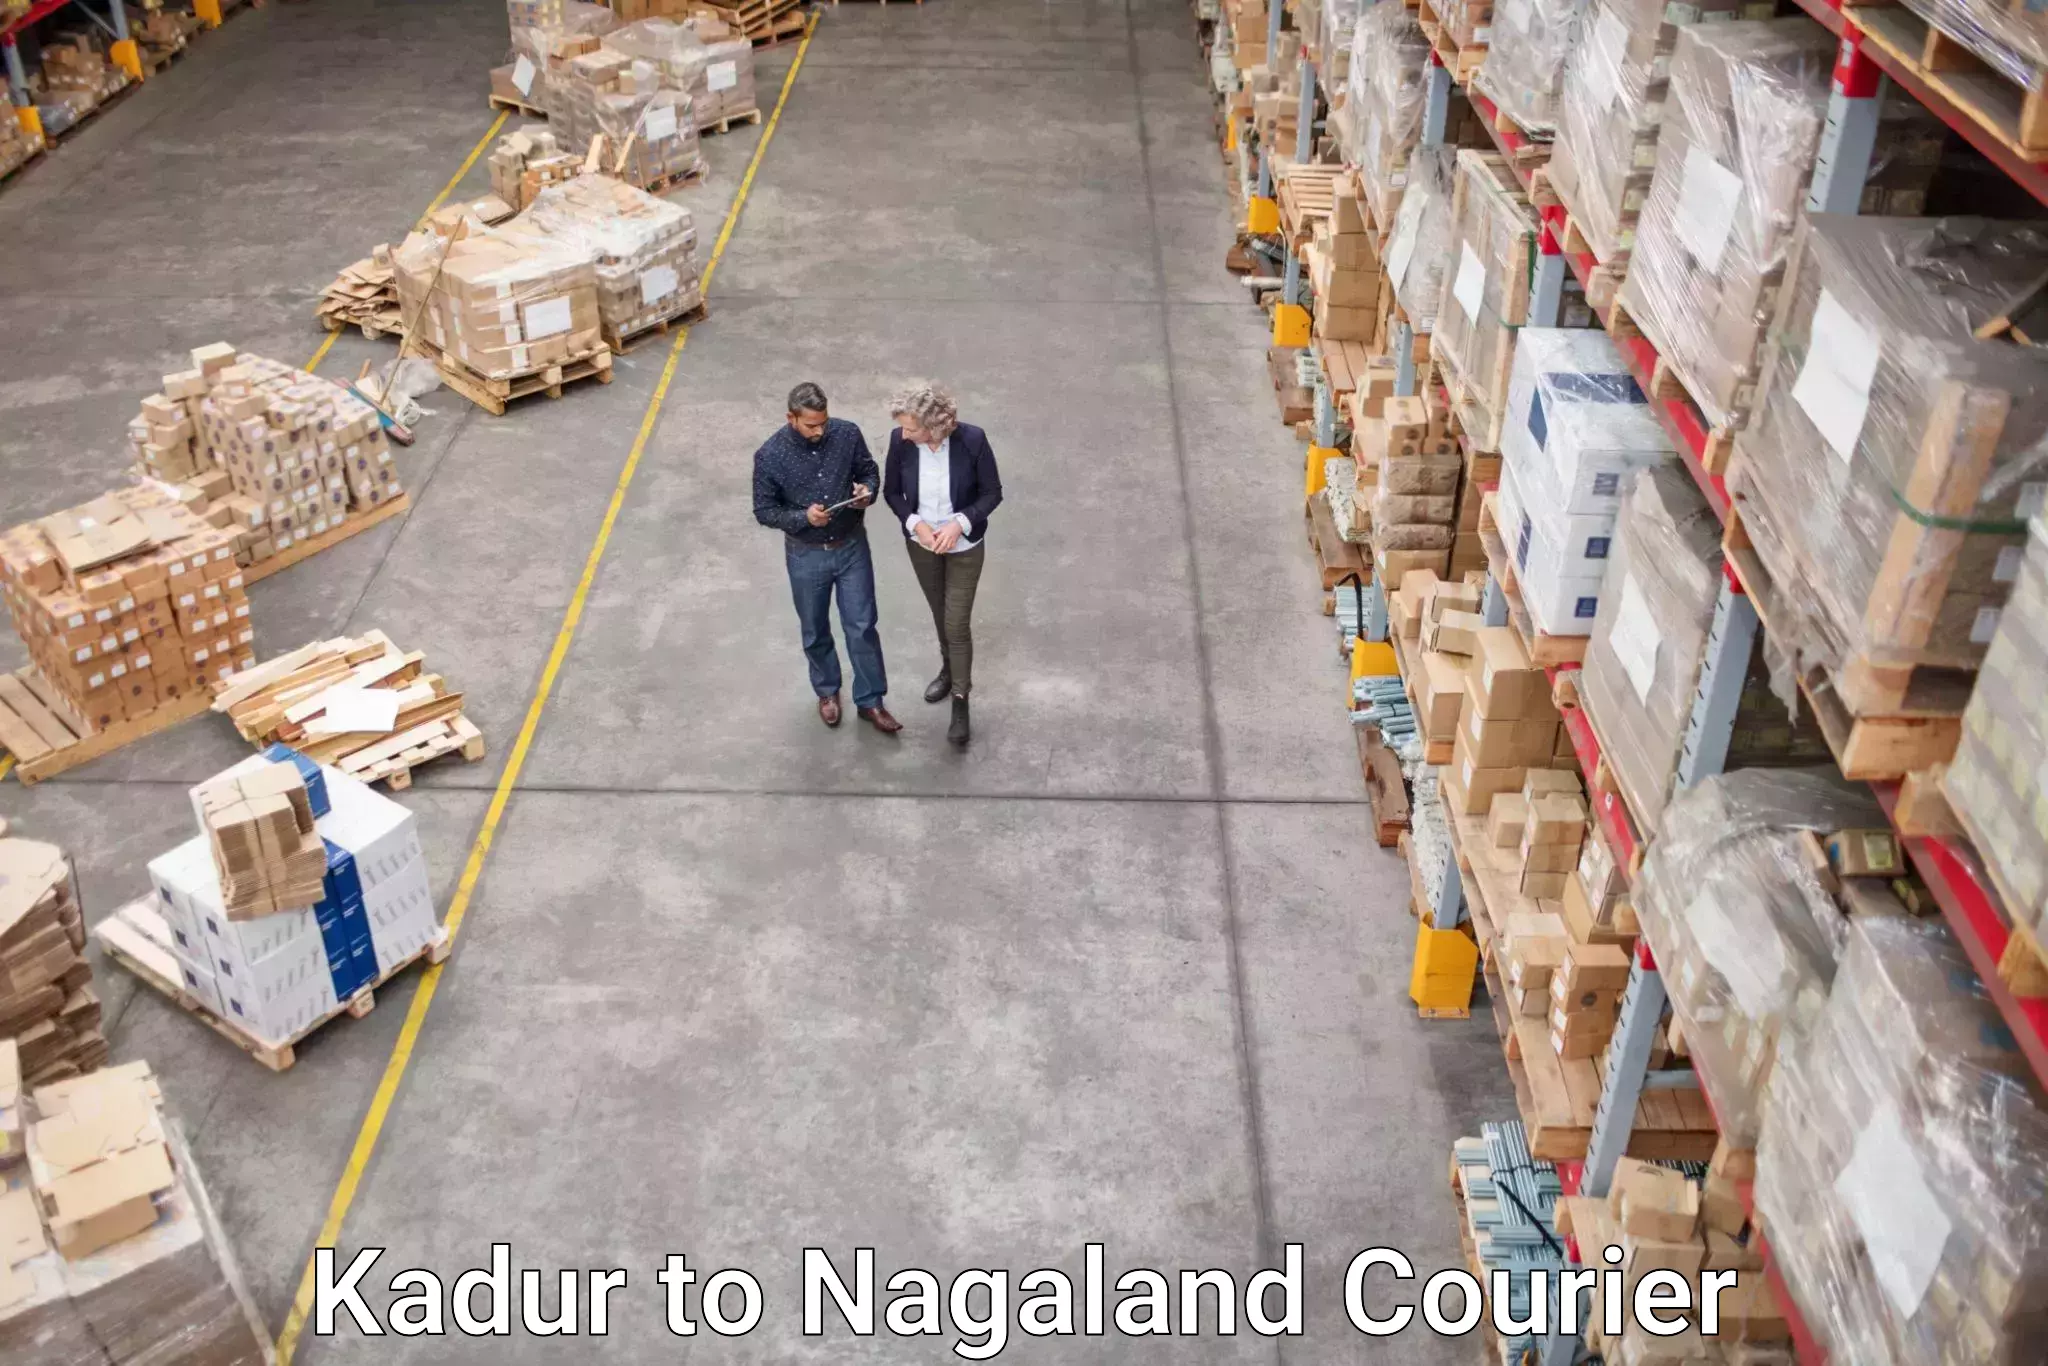 Modern courier technology Kadur to Nagaland